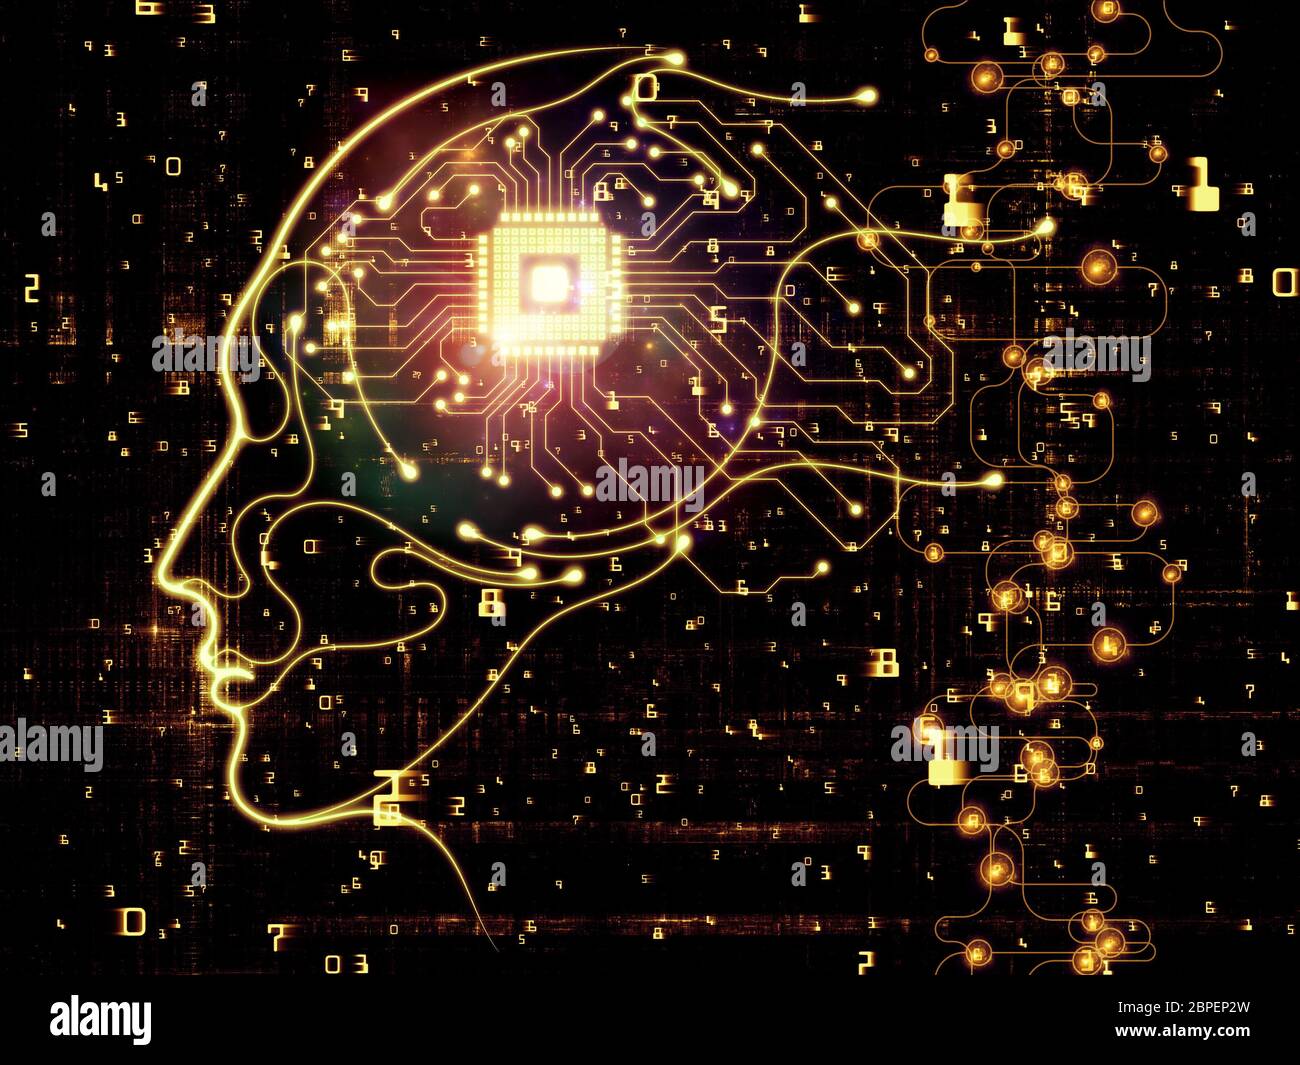 Processeurs Mind Series. Design composé de silhouette de visage humain et de symboles technologiques comme métaphore sur le sujet de l'informatique, l'intellect artificiel Banque D'Images